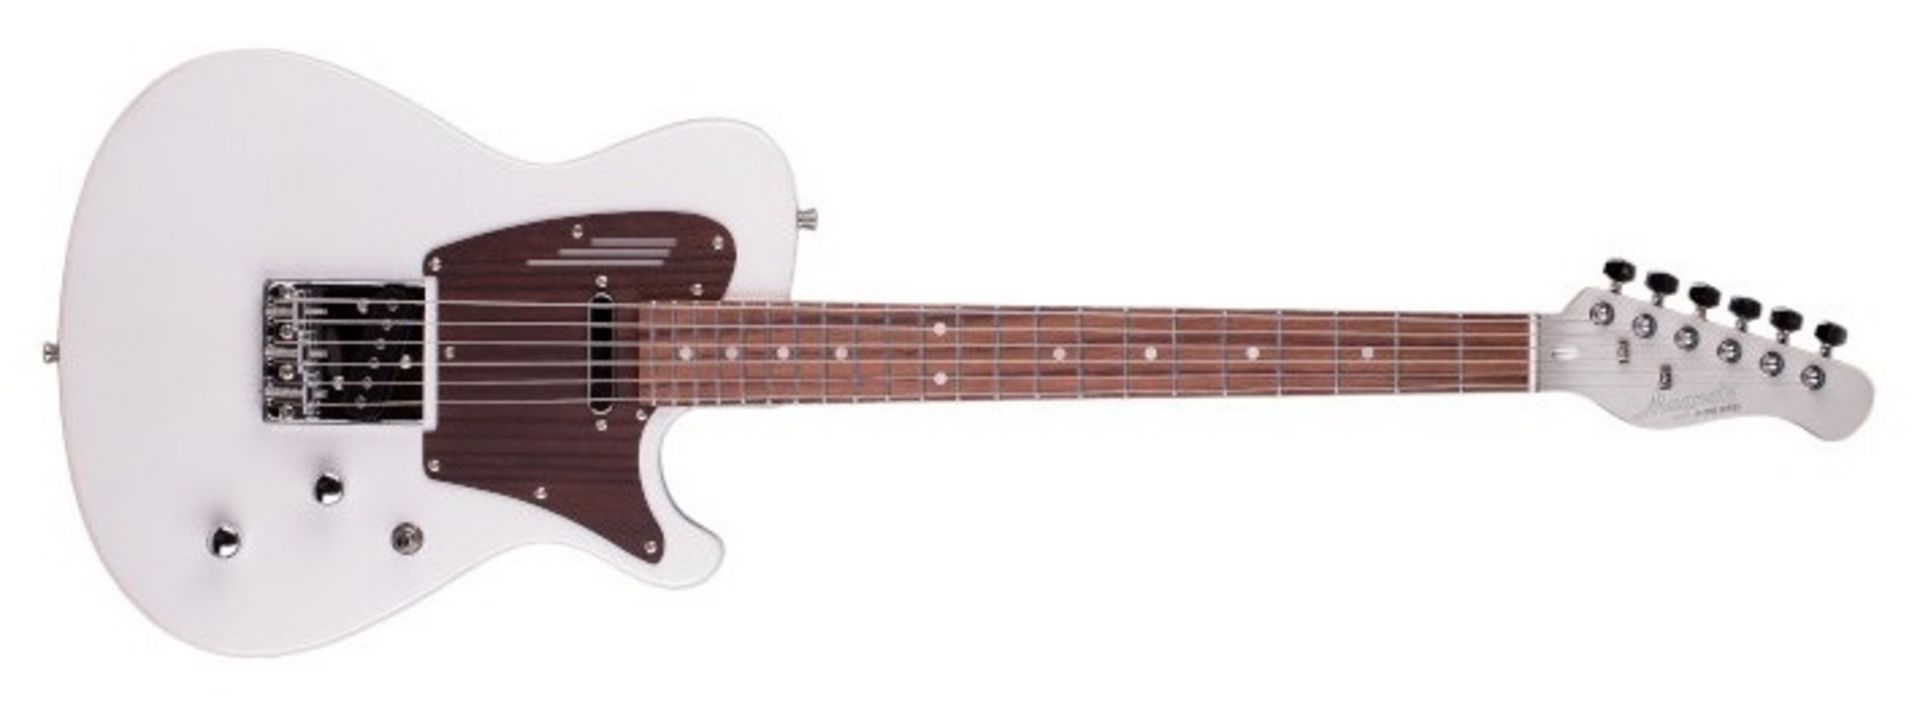 Magneto Guitars - U-ONE Series UT-Wave Classic UT-2300 White